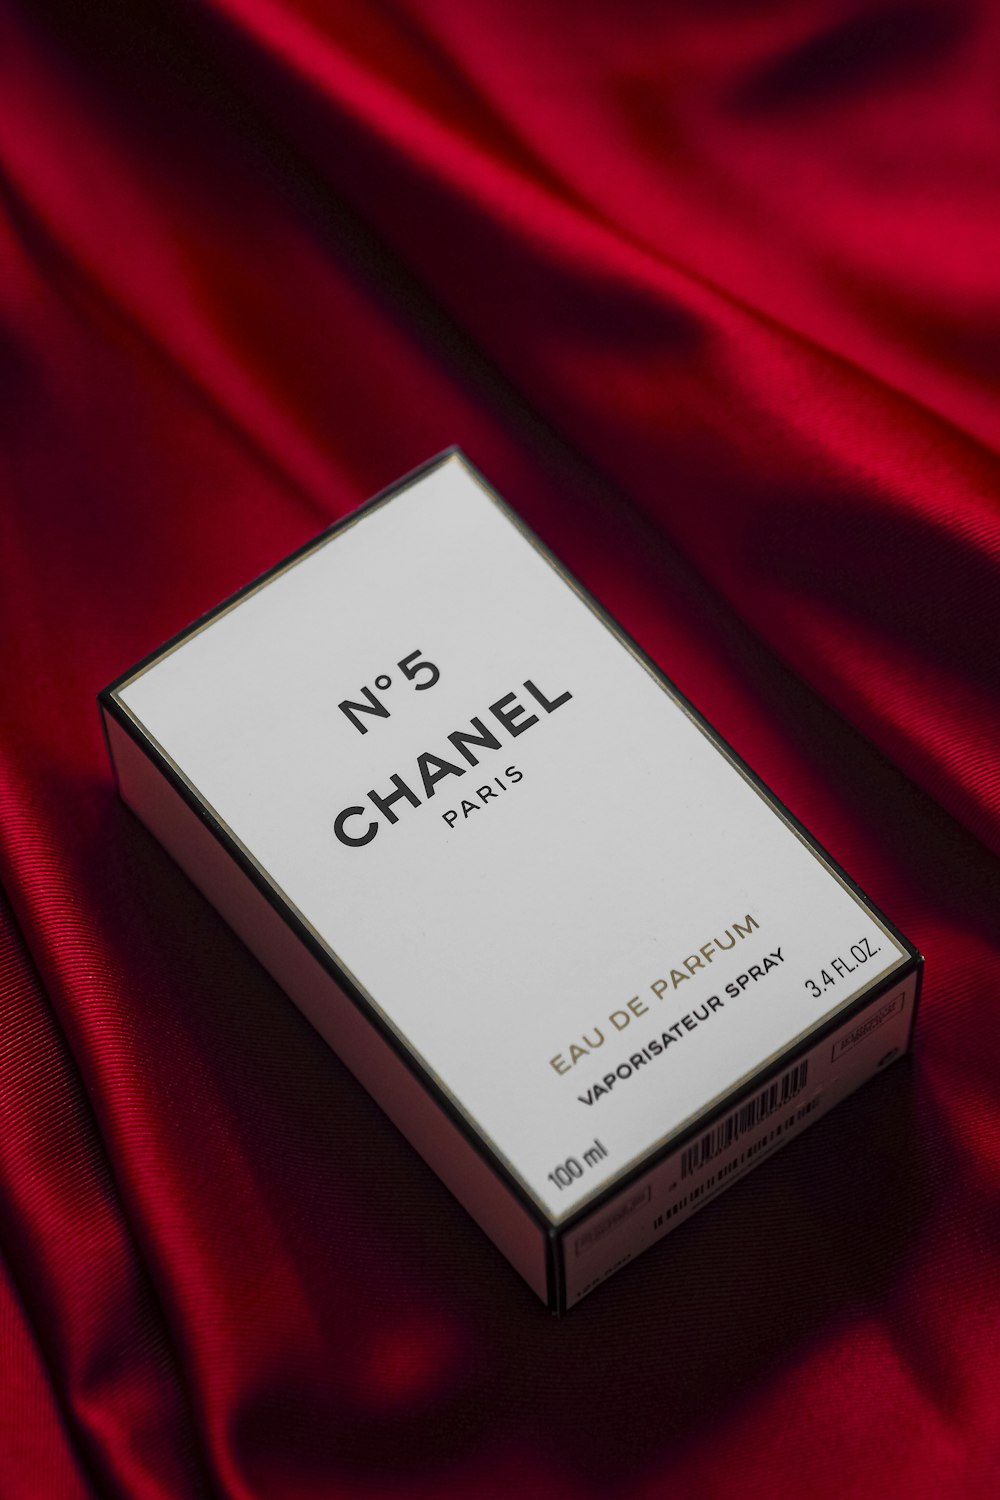 eine Schachtel Chanel Nr. 5 auf einem roten Tuch